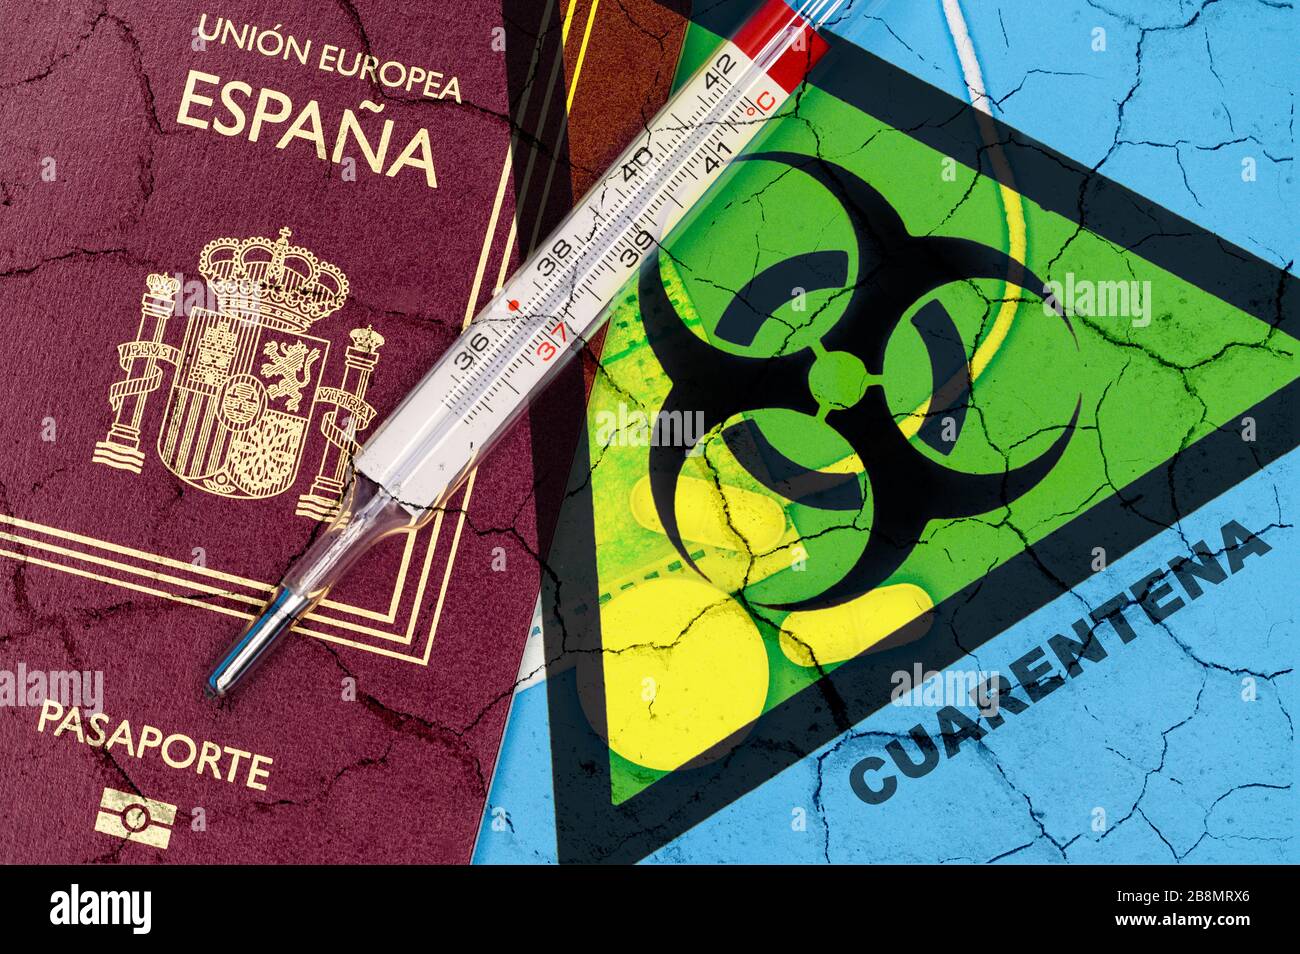 Spanien Reisebeschränkungen. Stornieren Sie die geplante Reise nach Spanien oder die Einschränkung des Konzepts der spanischen Reisenden aufgrund der Ausbreitung der Coronavirus-Infektion. Quarantäne für die Kovid-19-Pandemie. Stockfoto